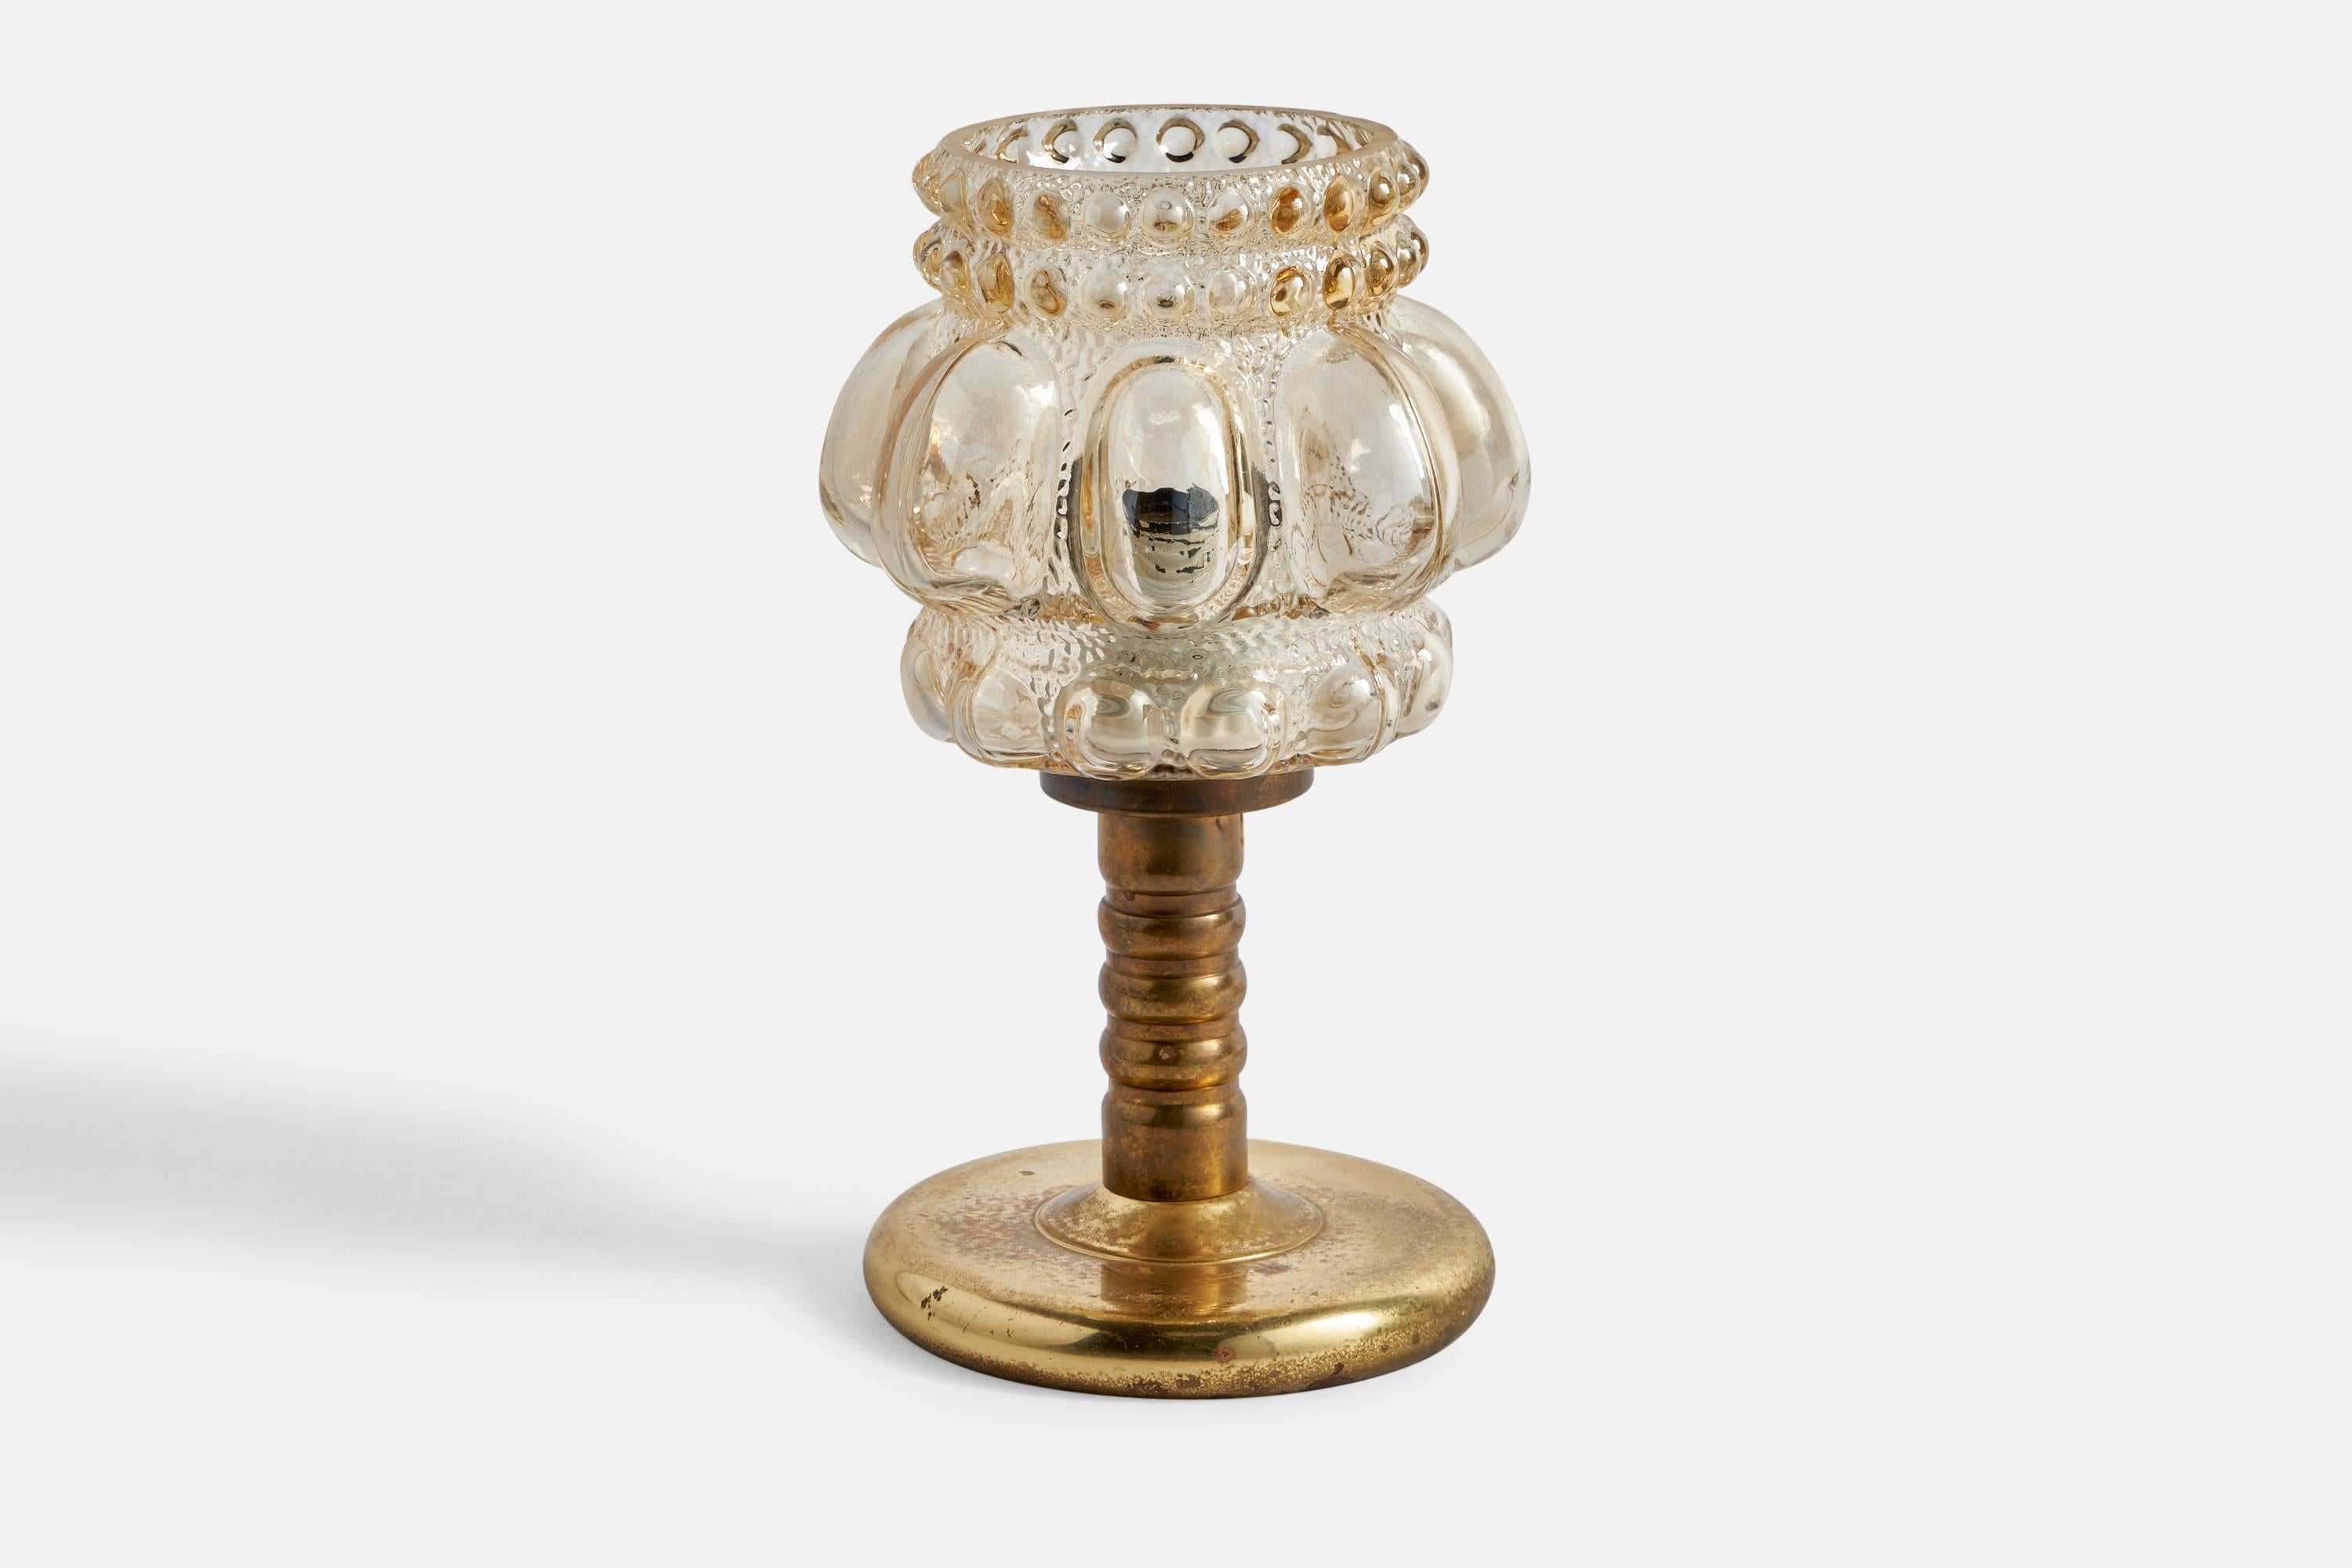 Lampe de table en verre et en laiton conçue par Helena Tynell et produite par Glashütte Limburg, Allemagne, c. années 1960.

Dimensions globales (pouces) : 9.55